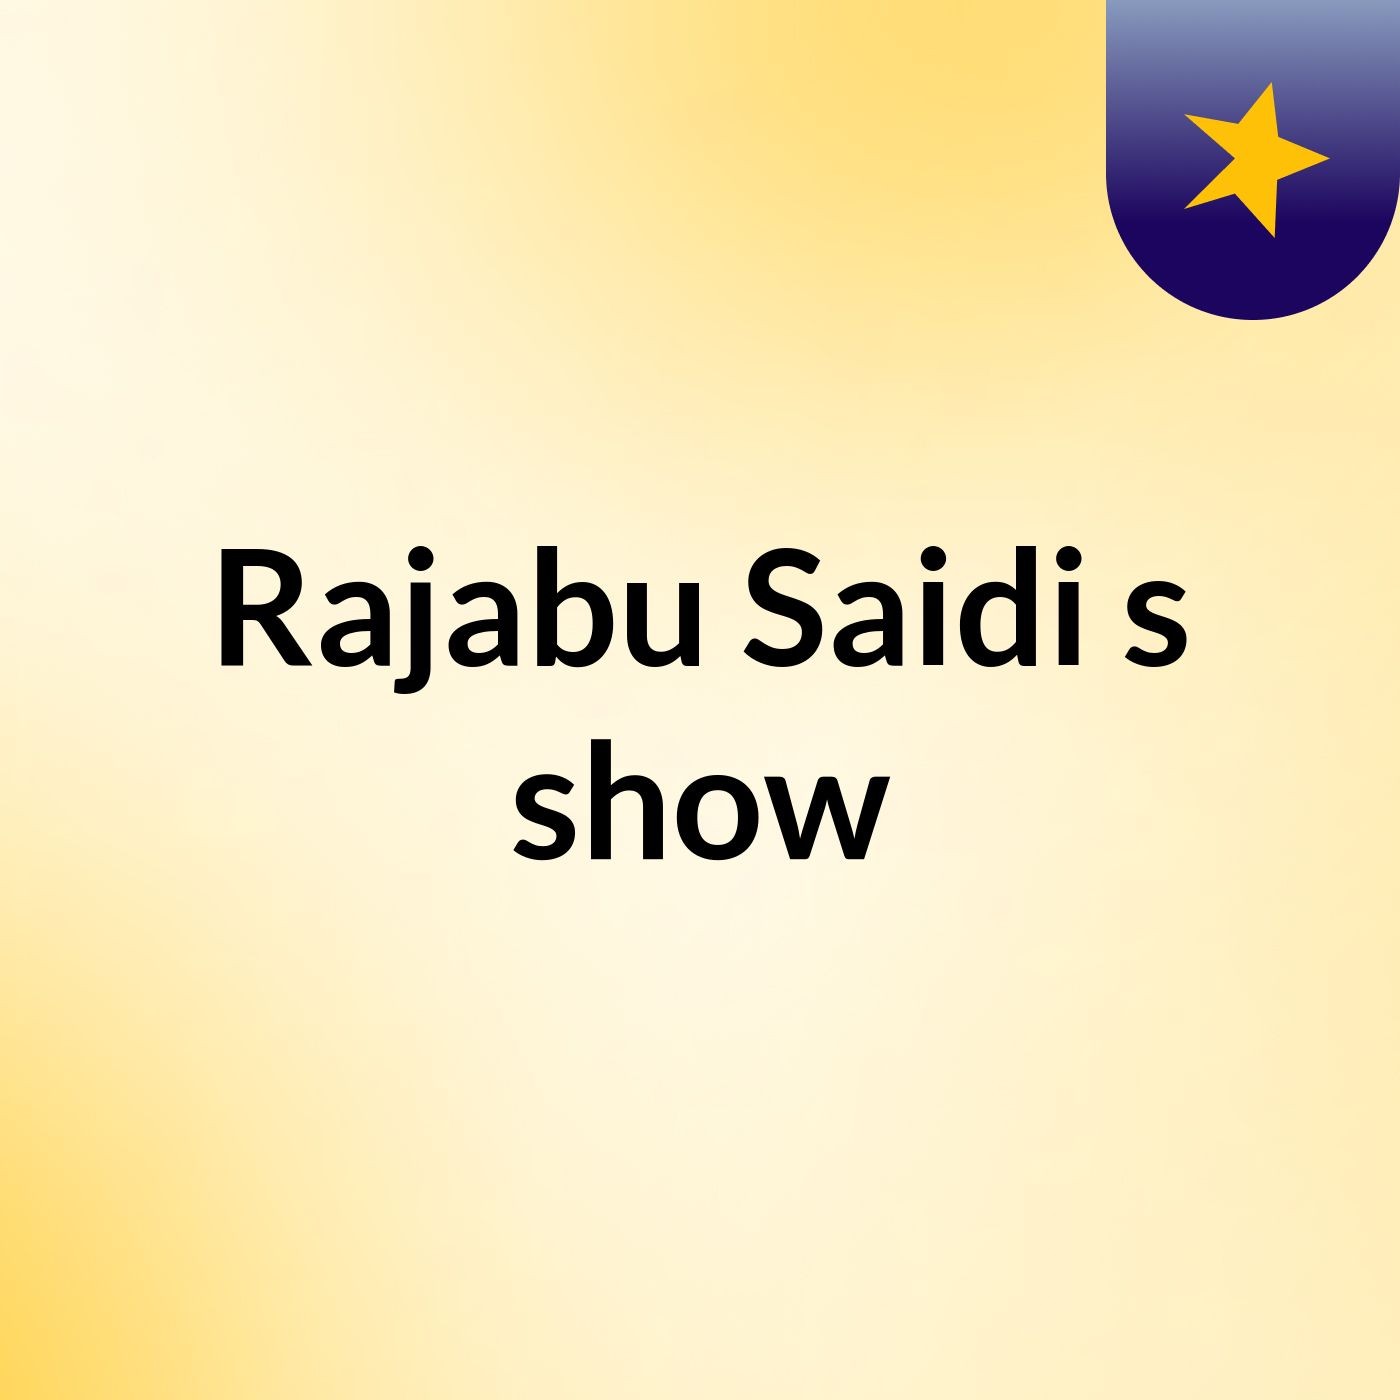 Rajabu Saidi's show